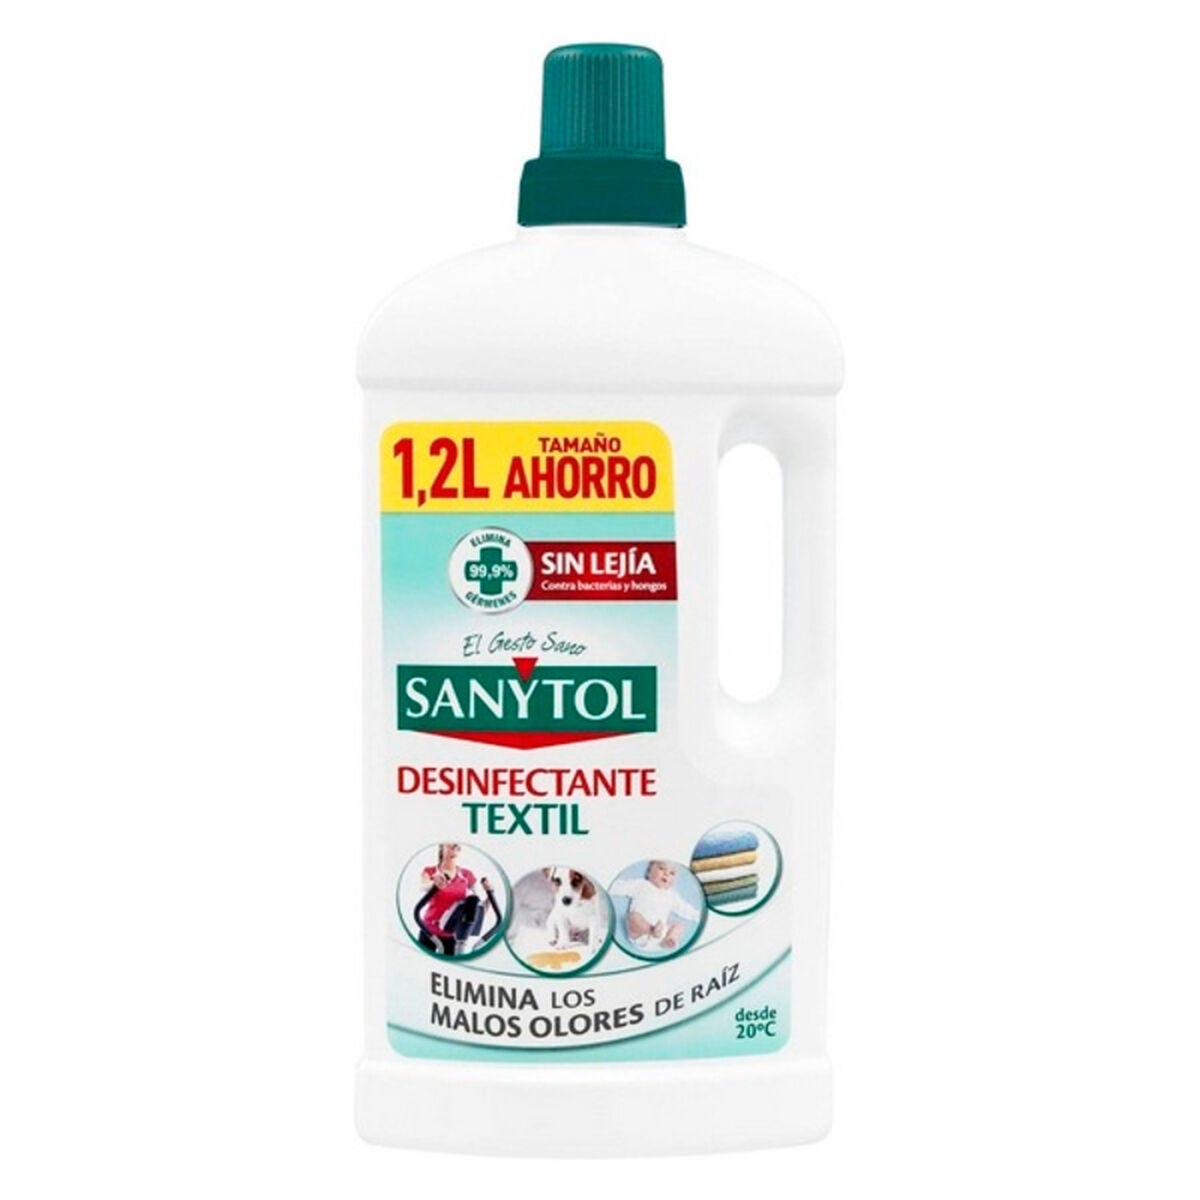 Sanytol Detergente disinfettante per pavimenti e superfici senza  candeggina, pino mediterraneo, 1 l, confezione da 4 : : Salute e  cura della persona